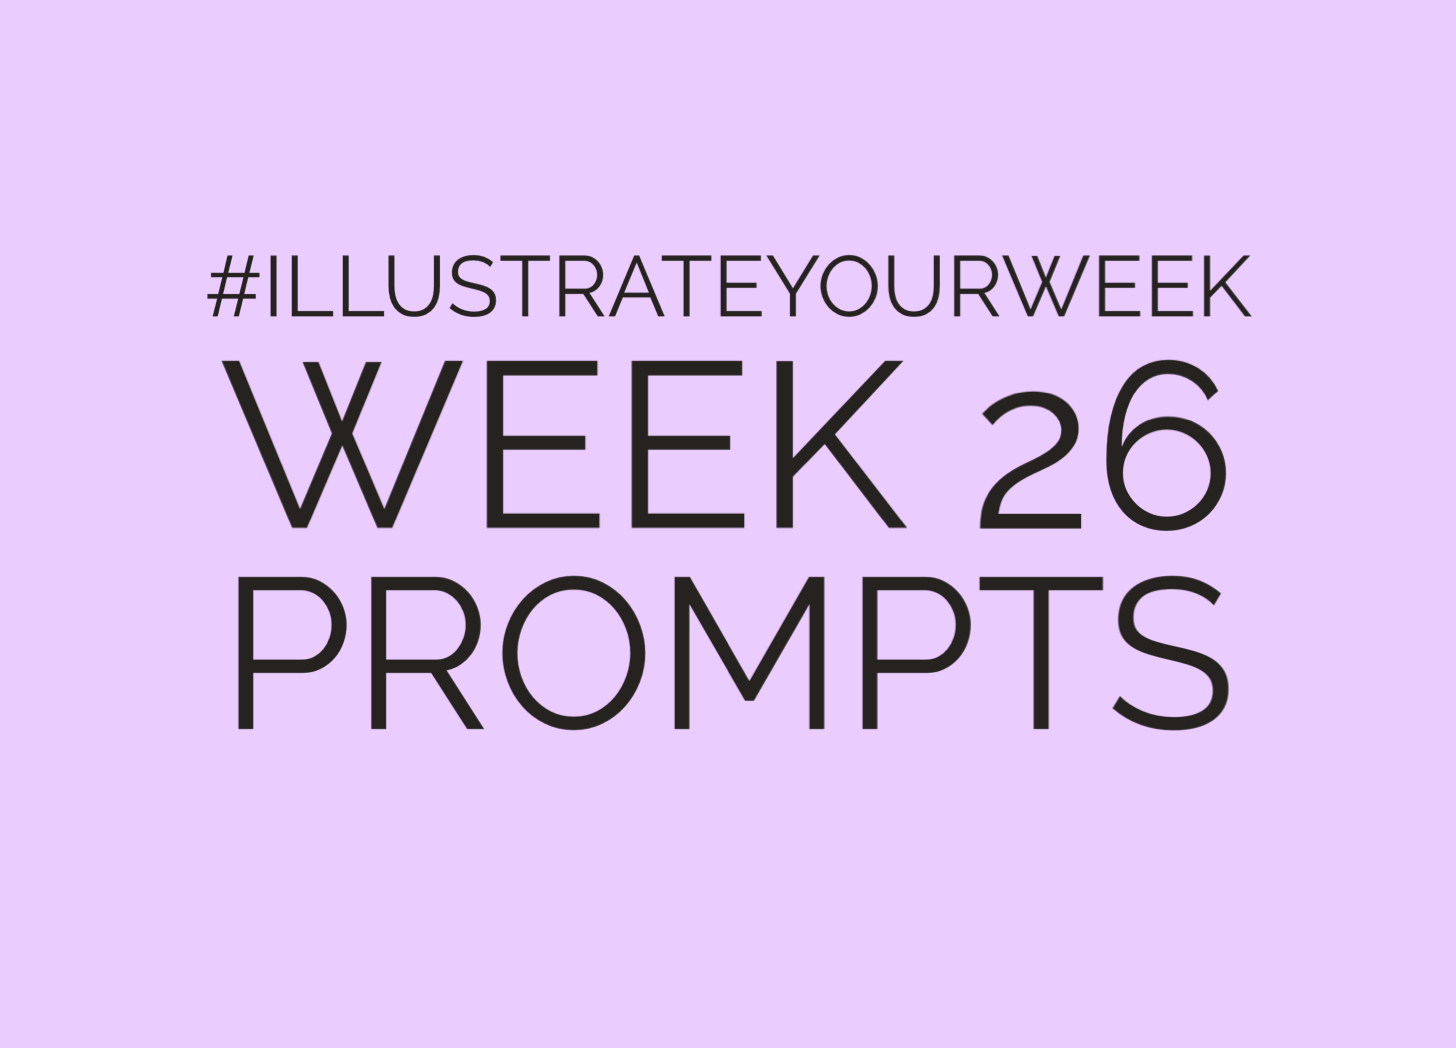 Week 26 Illustrate Your Week Prompts